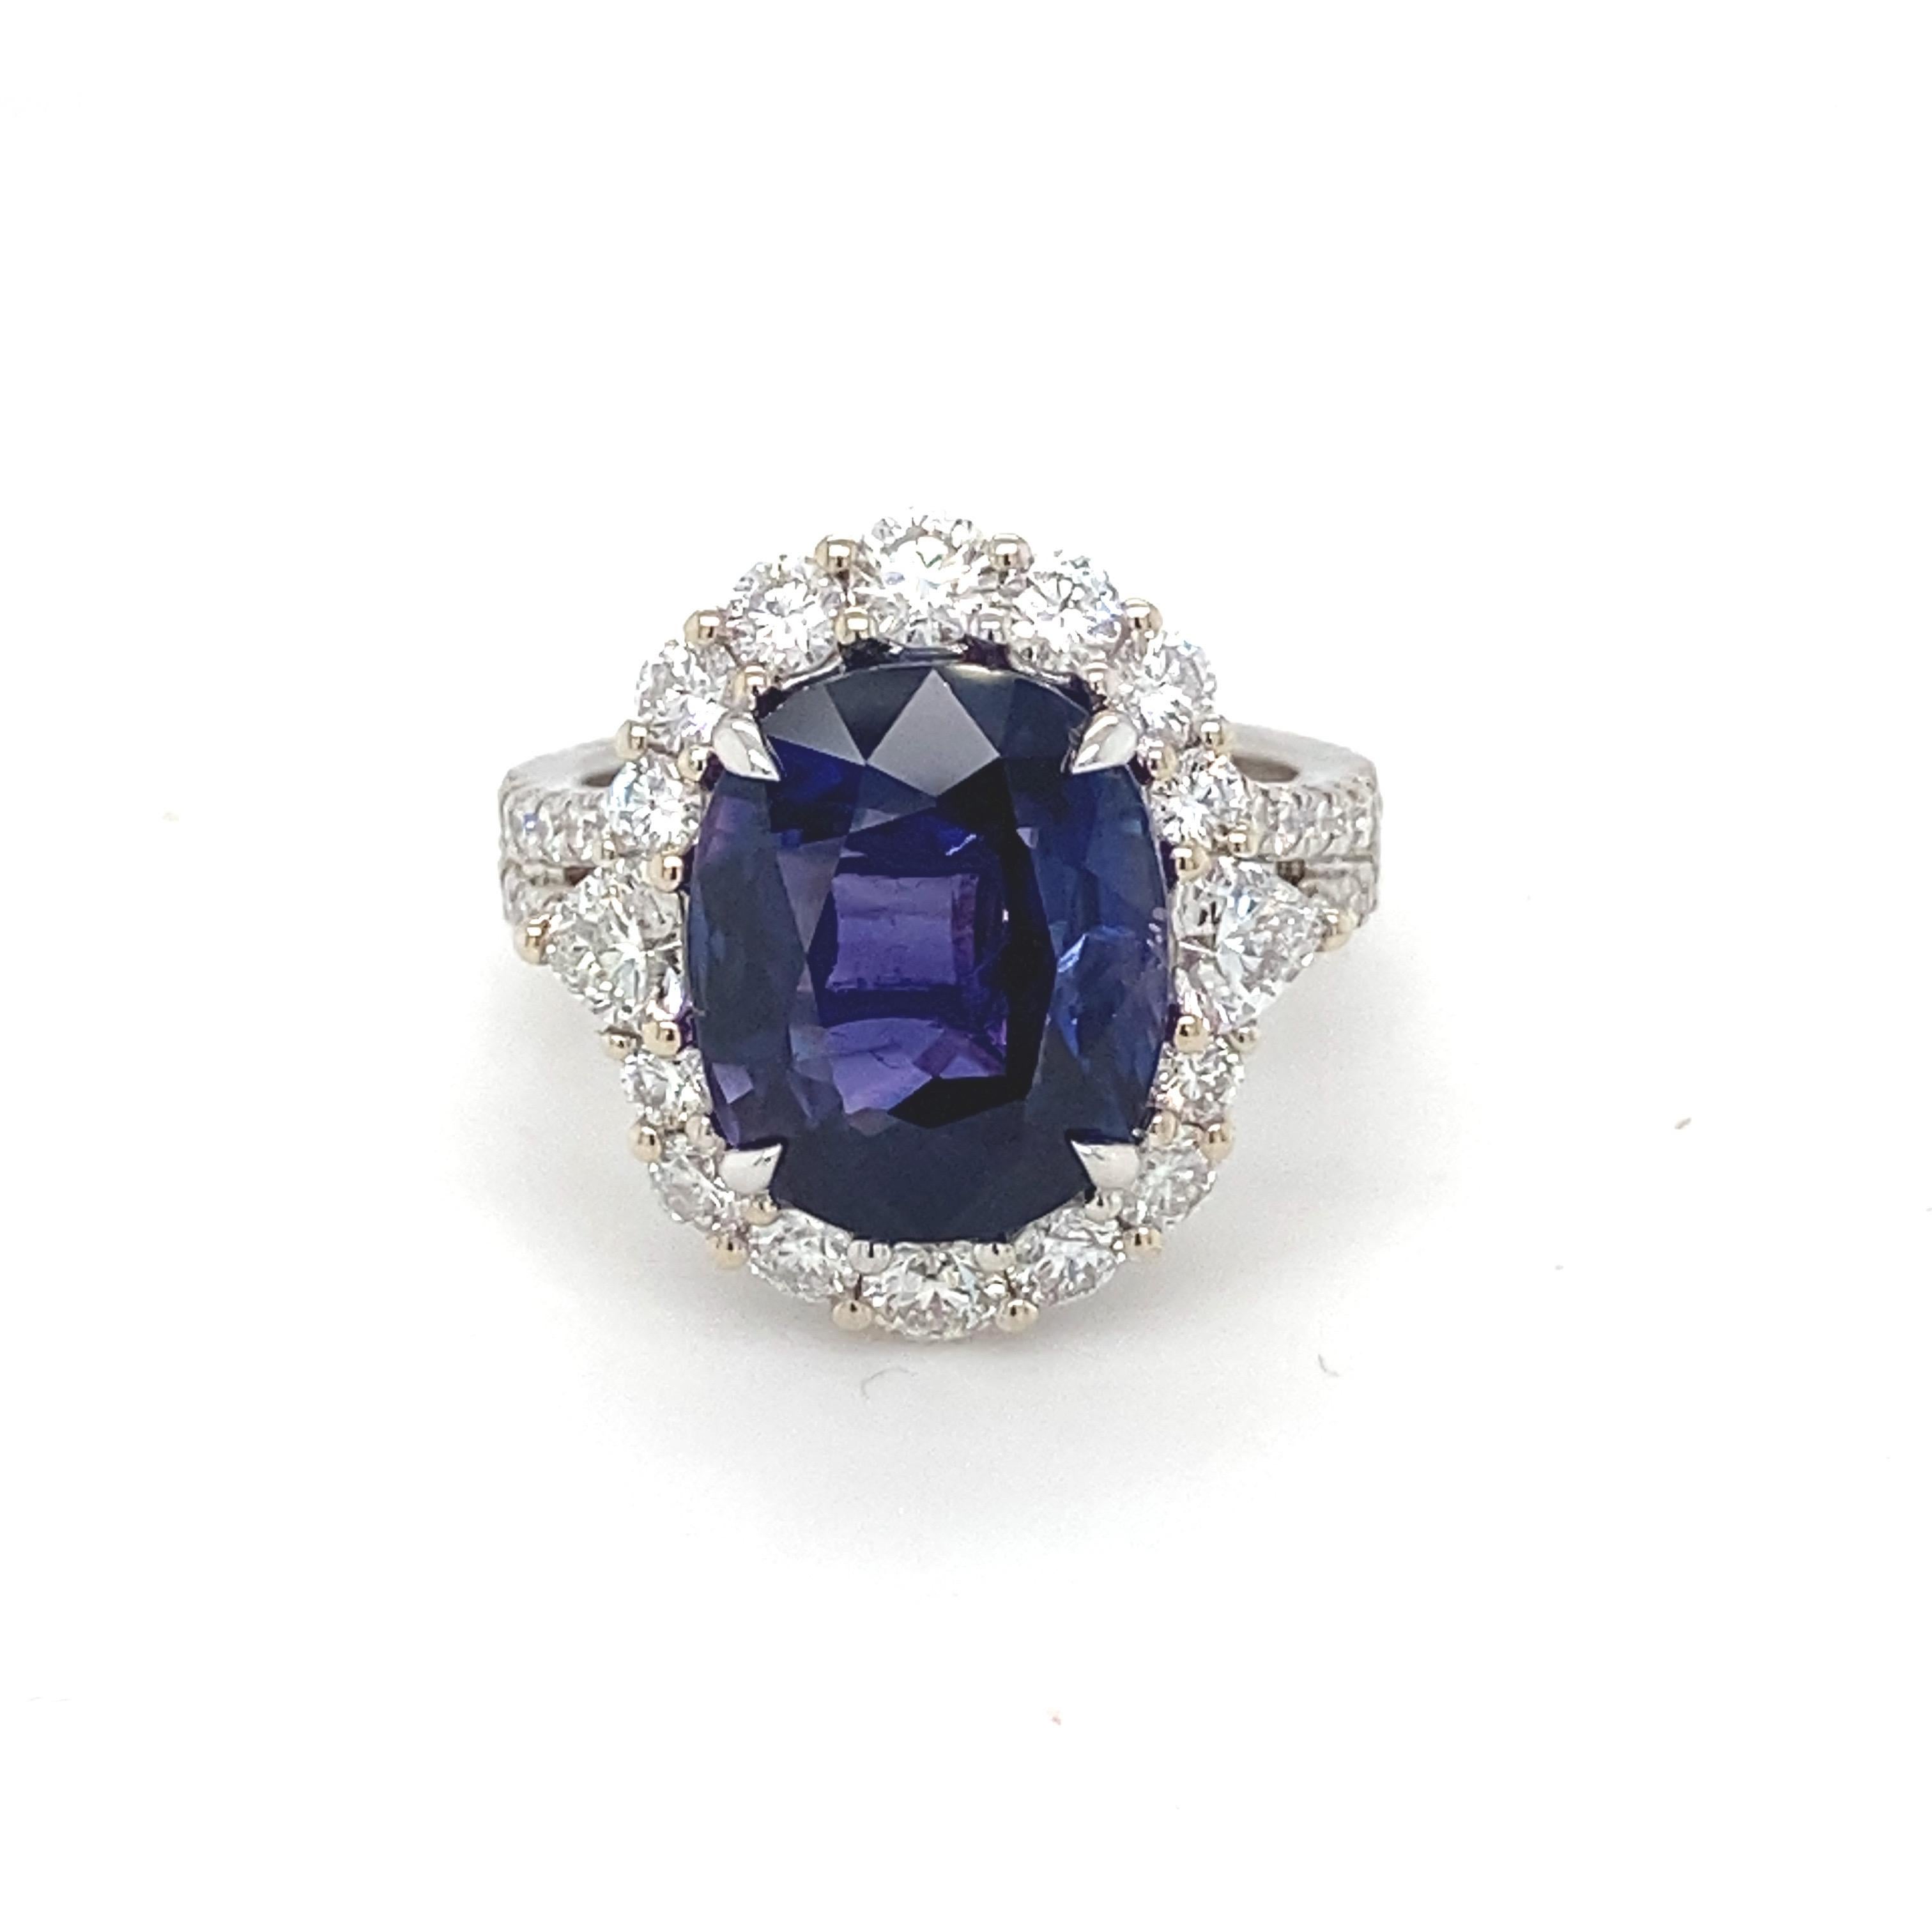 Dieser GIA-zertifizierte violettblaue ovale Saphir ist in vier Zacken gefasst und von einem glitzernden Diamantenhalo eingerahmt. Die diamantenen Akzente auf der Ringschiene verleihen diesem Saphirring ein elegantes und zugleich atemberaubendes